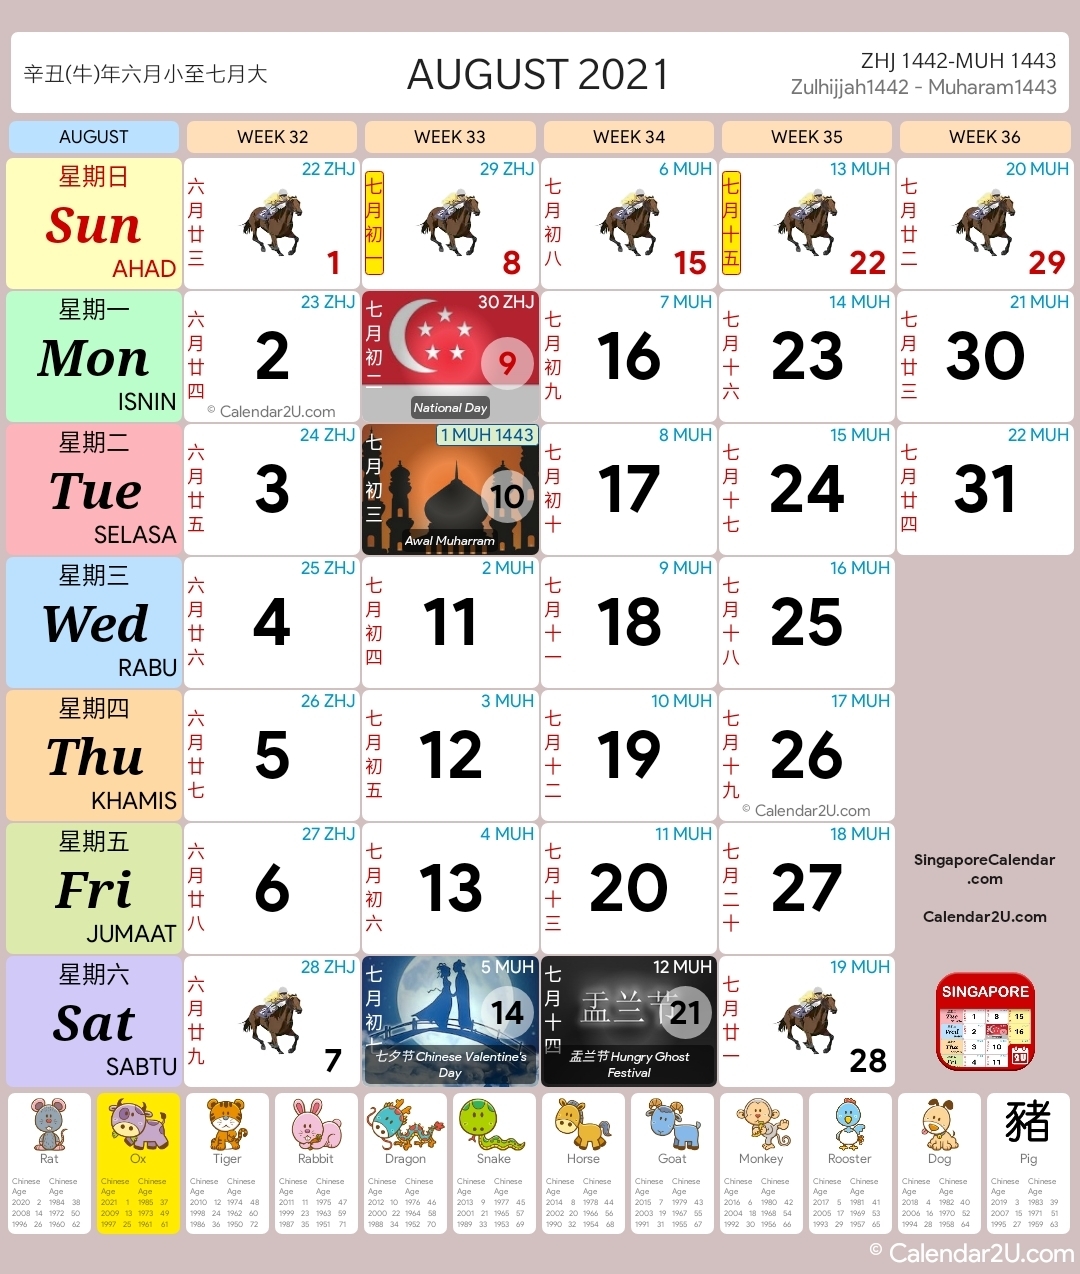 Singapore Calendar Year 2021 - Singapore Calendar